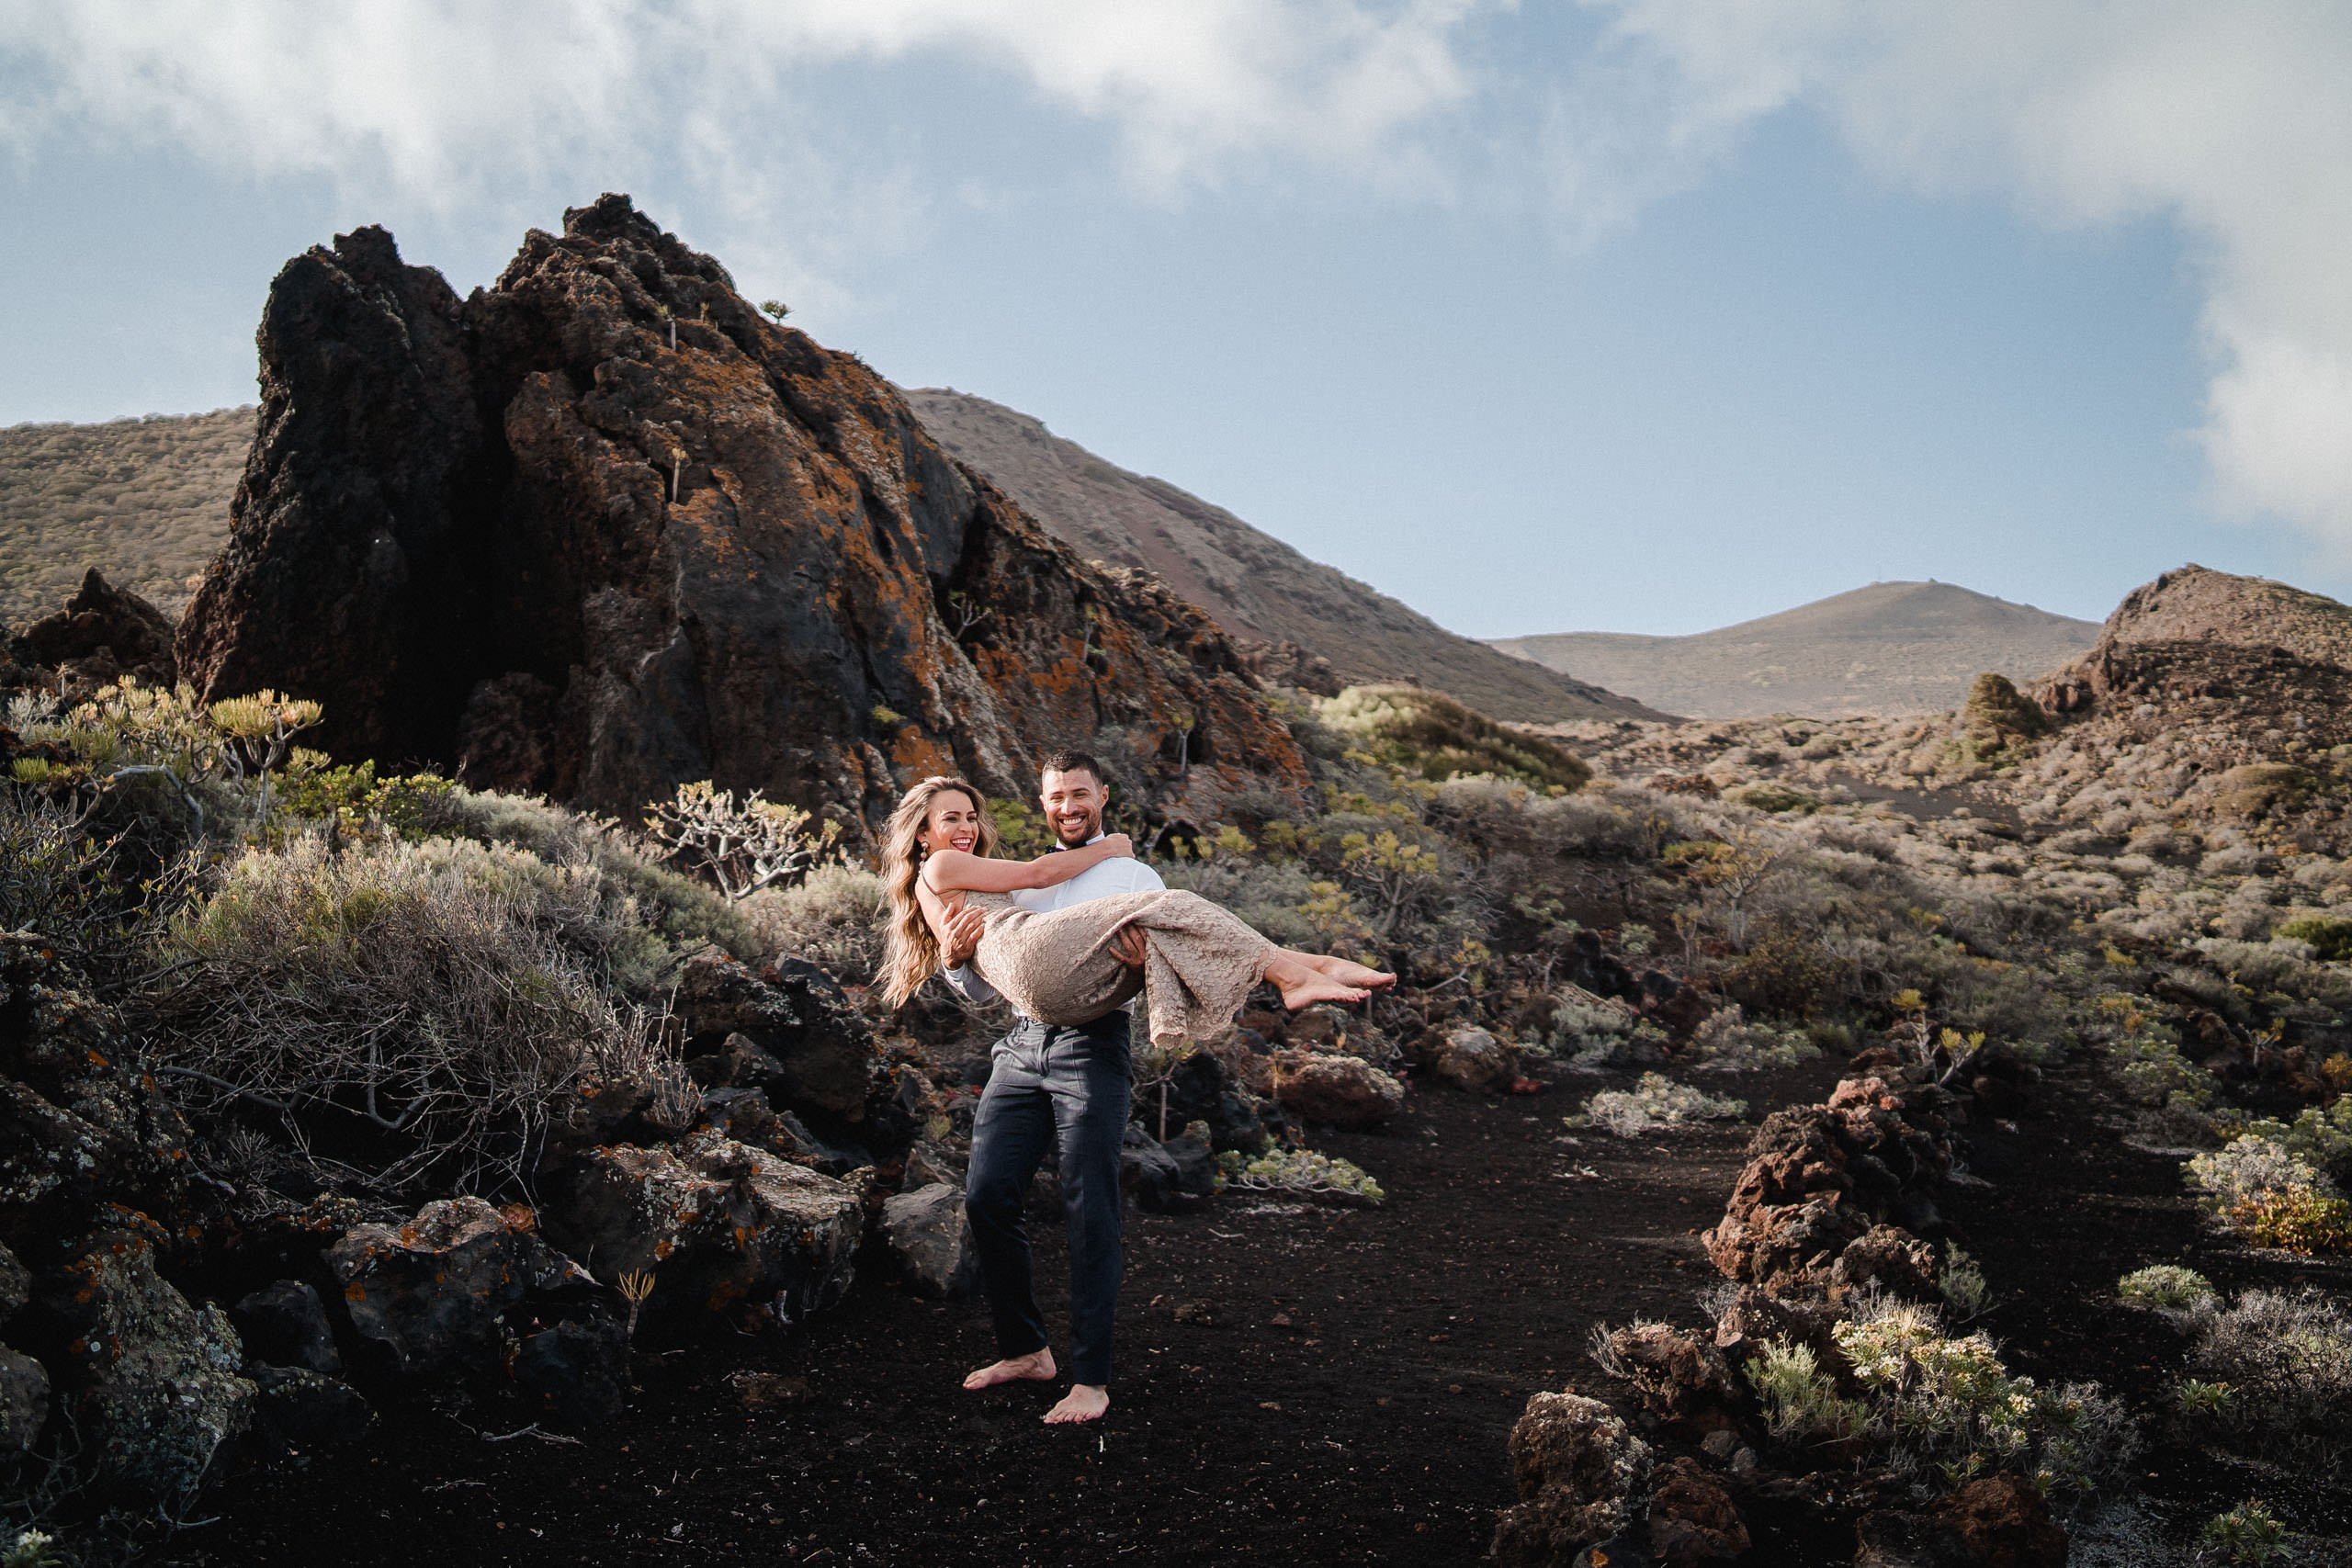 Aida + Tim | Hochzeitsfotografen am Bodensee Elopement - La Palma, Spanien 